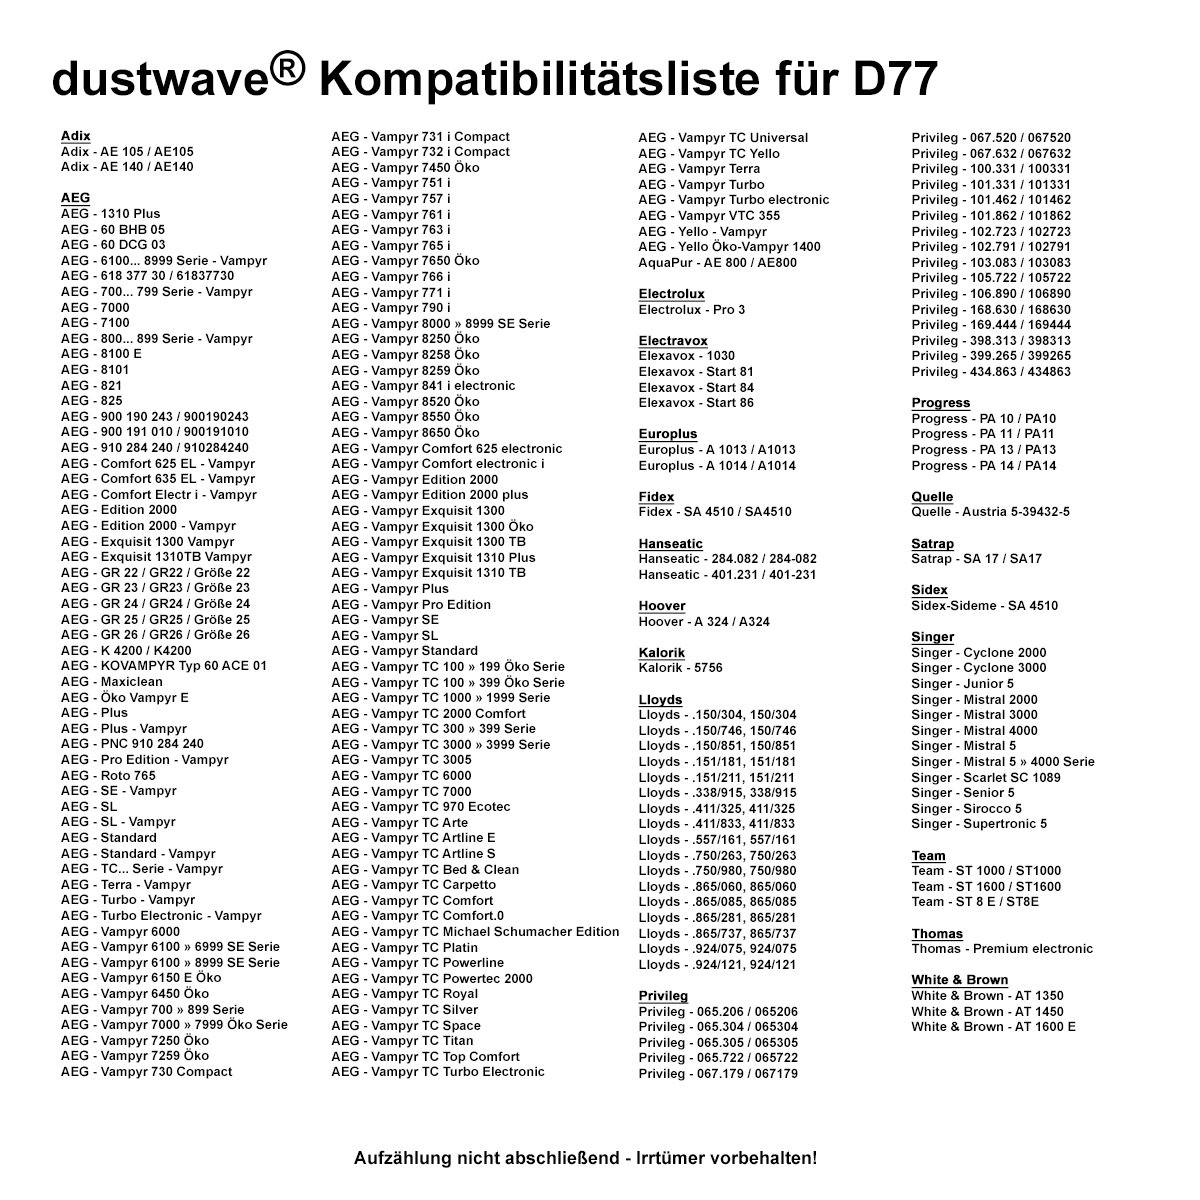 Dustwave® 1 Staubsaugerbeutel für AEG Vampyr 732 i Electronic / Compact - hocheffizient, mehrlagiges Mikrovlies mit Hygieneverschluss - Made in Germany